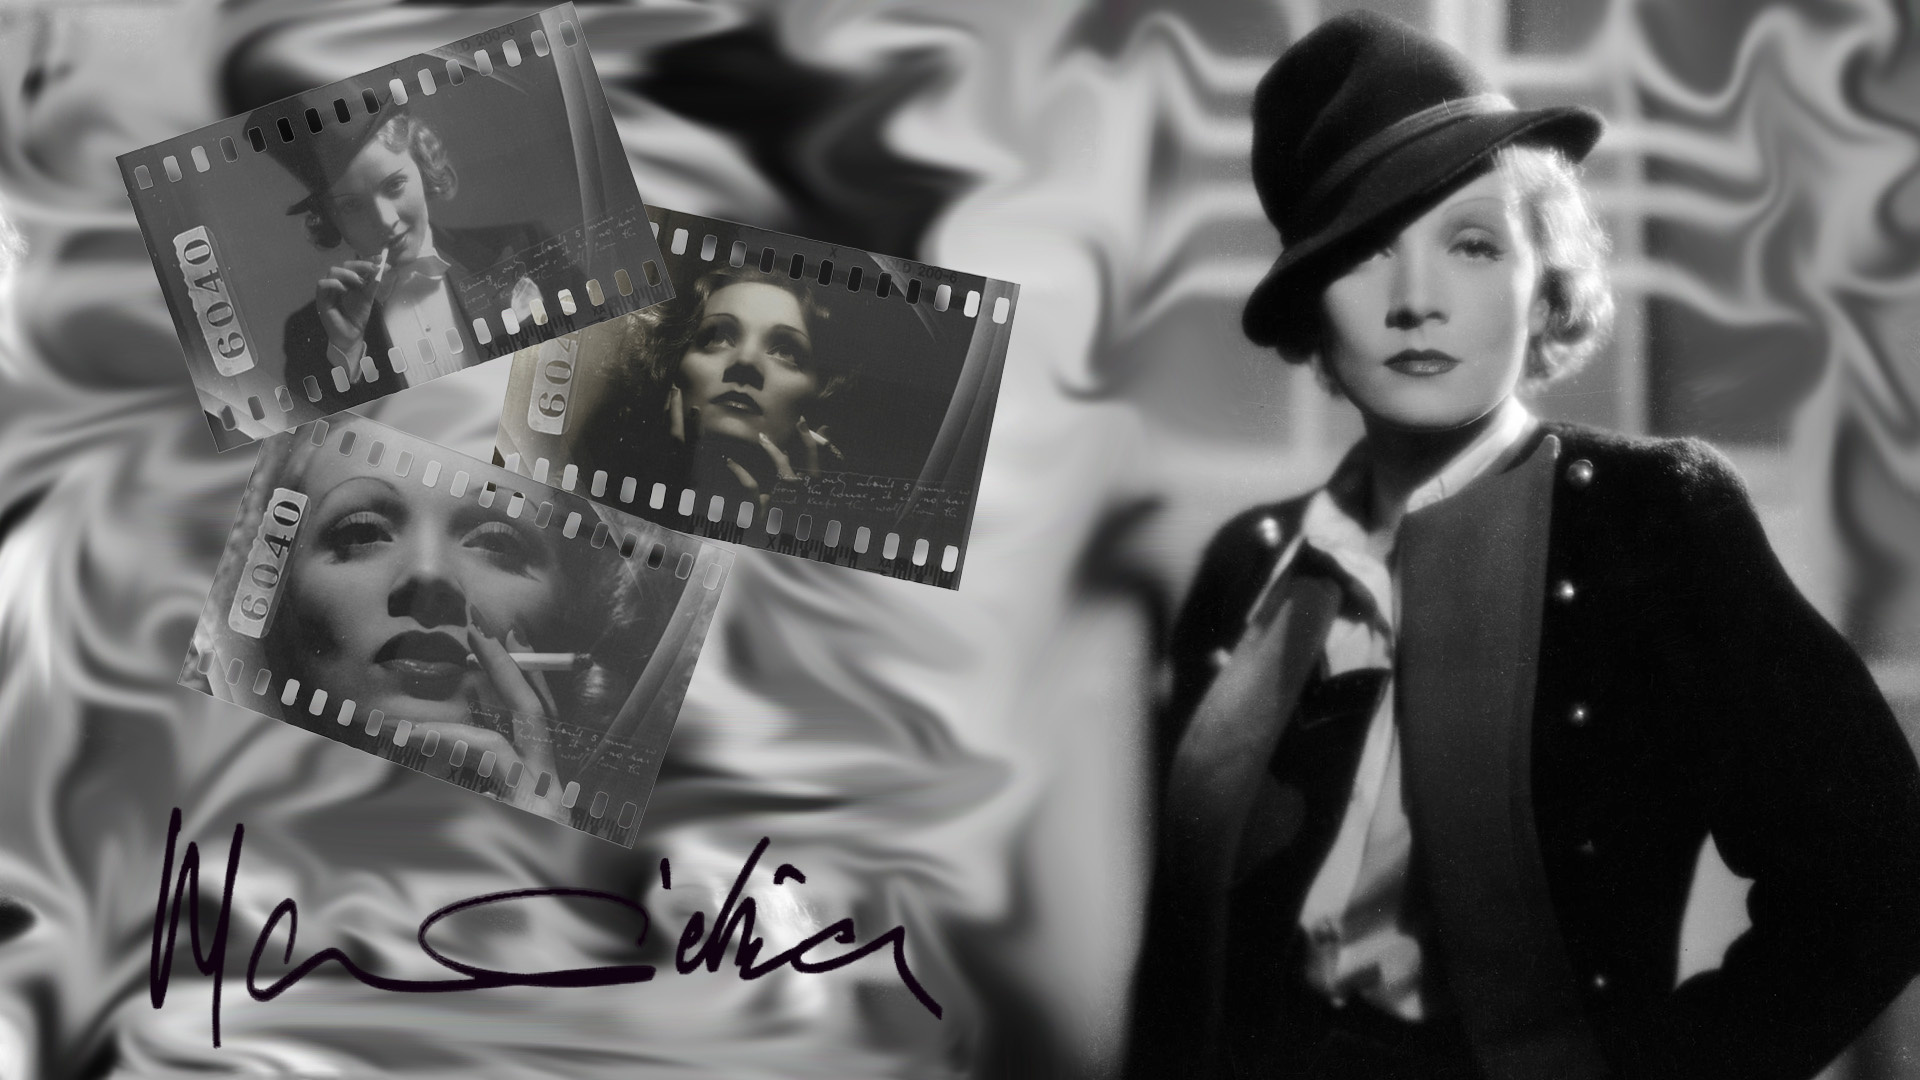 Marlene Dietrich Celebs, Dietrich wallpapers, Marlene Dietrich images, Desktop mobile tablet, 1920x1080 Full HD Desktop